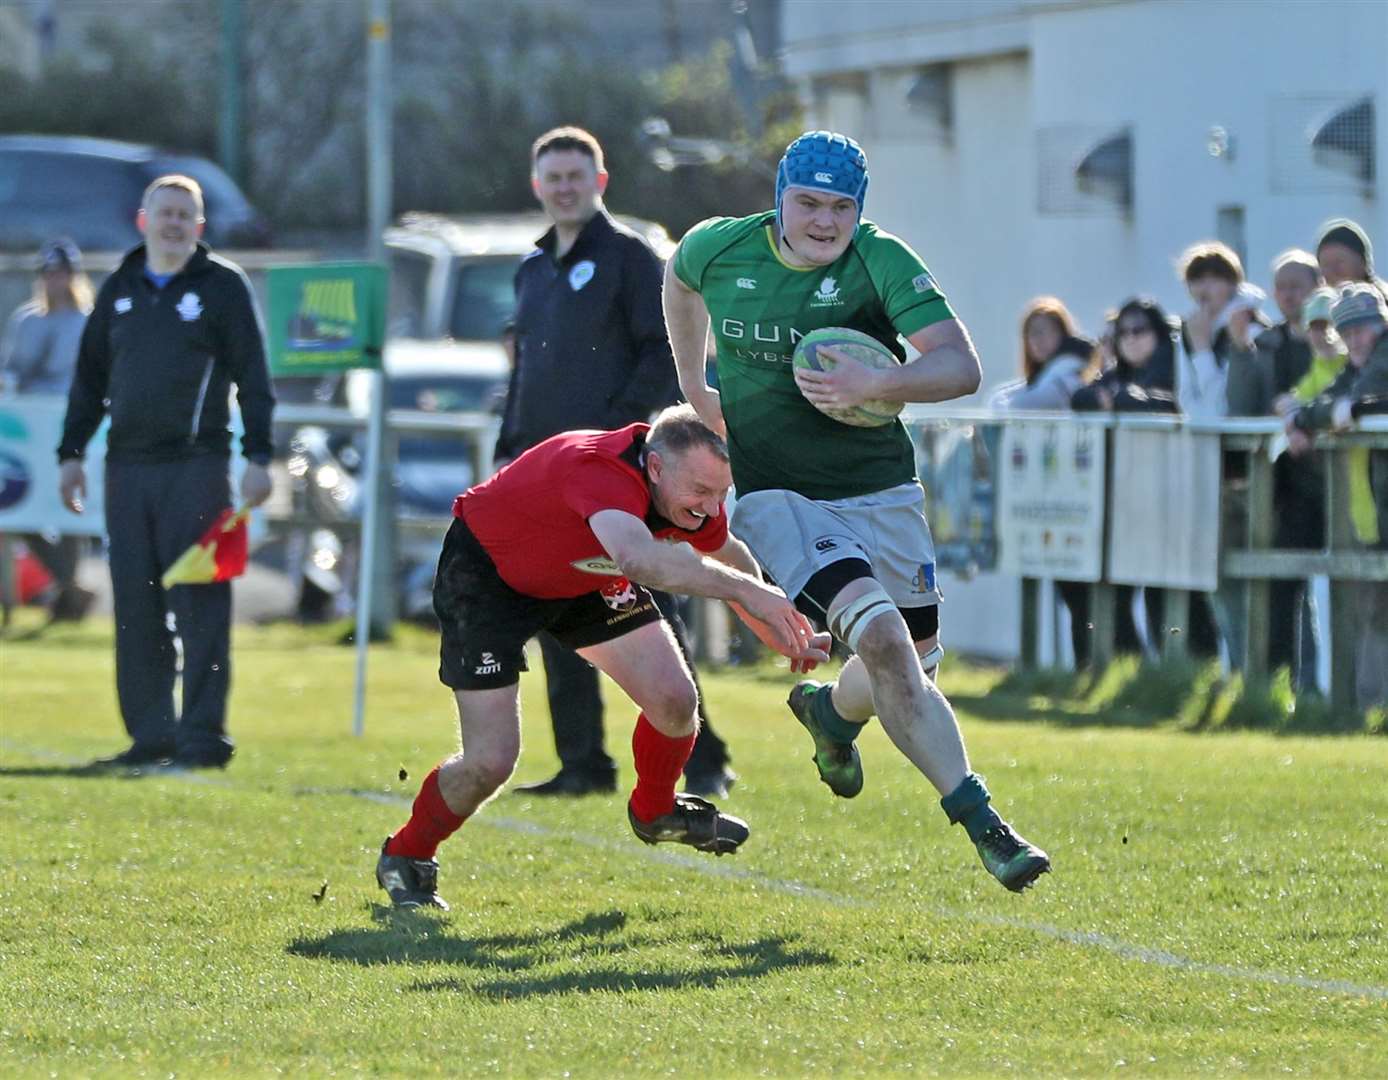 Reece Coghill flies past a defender, Picture: James Gunn